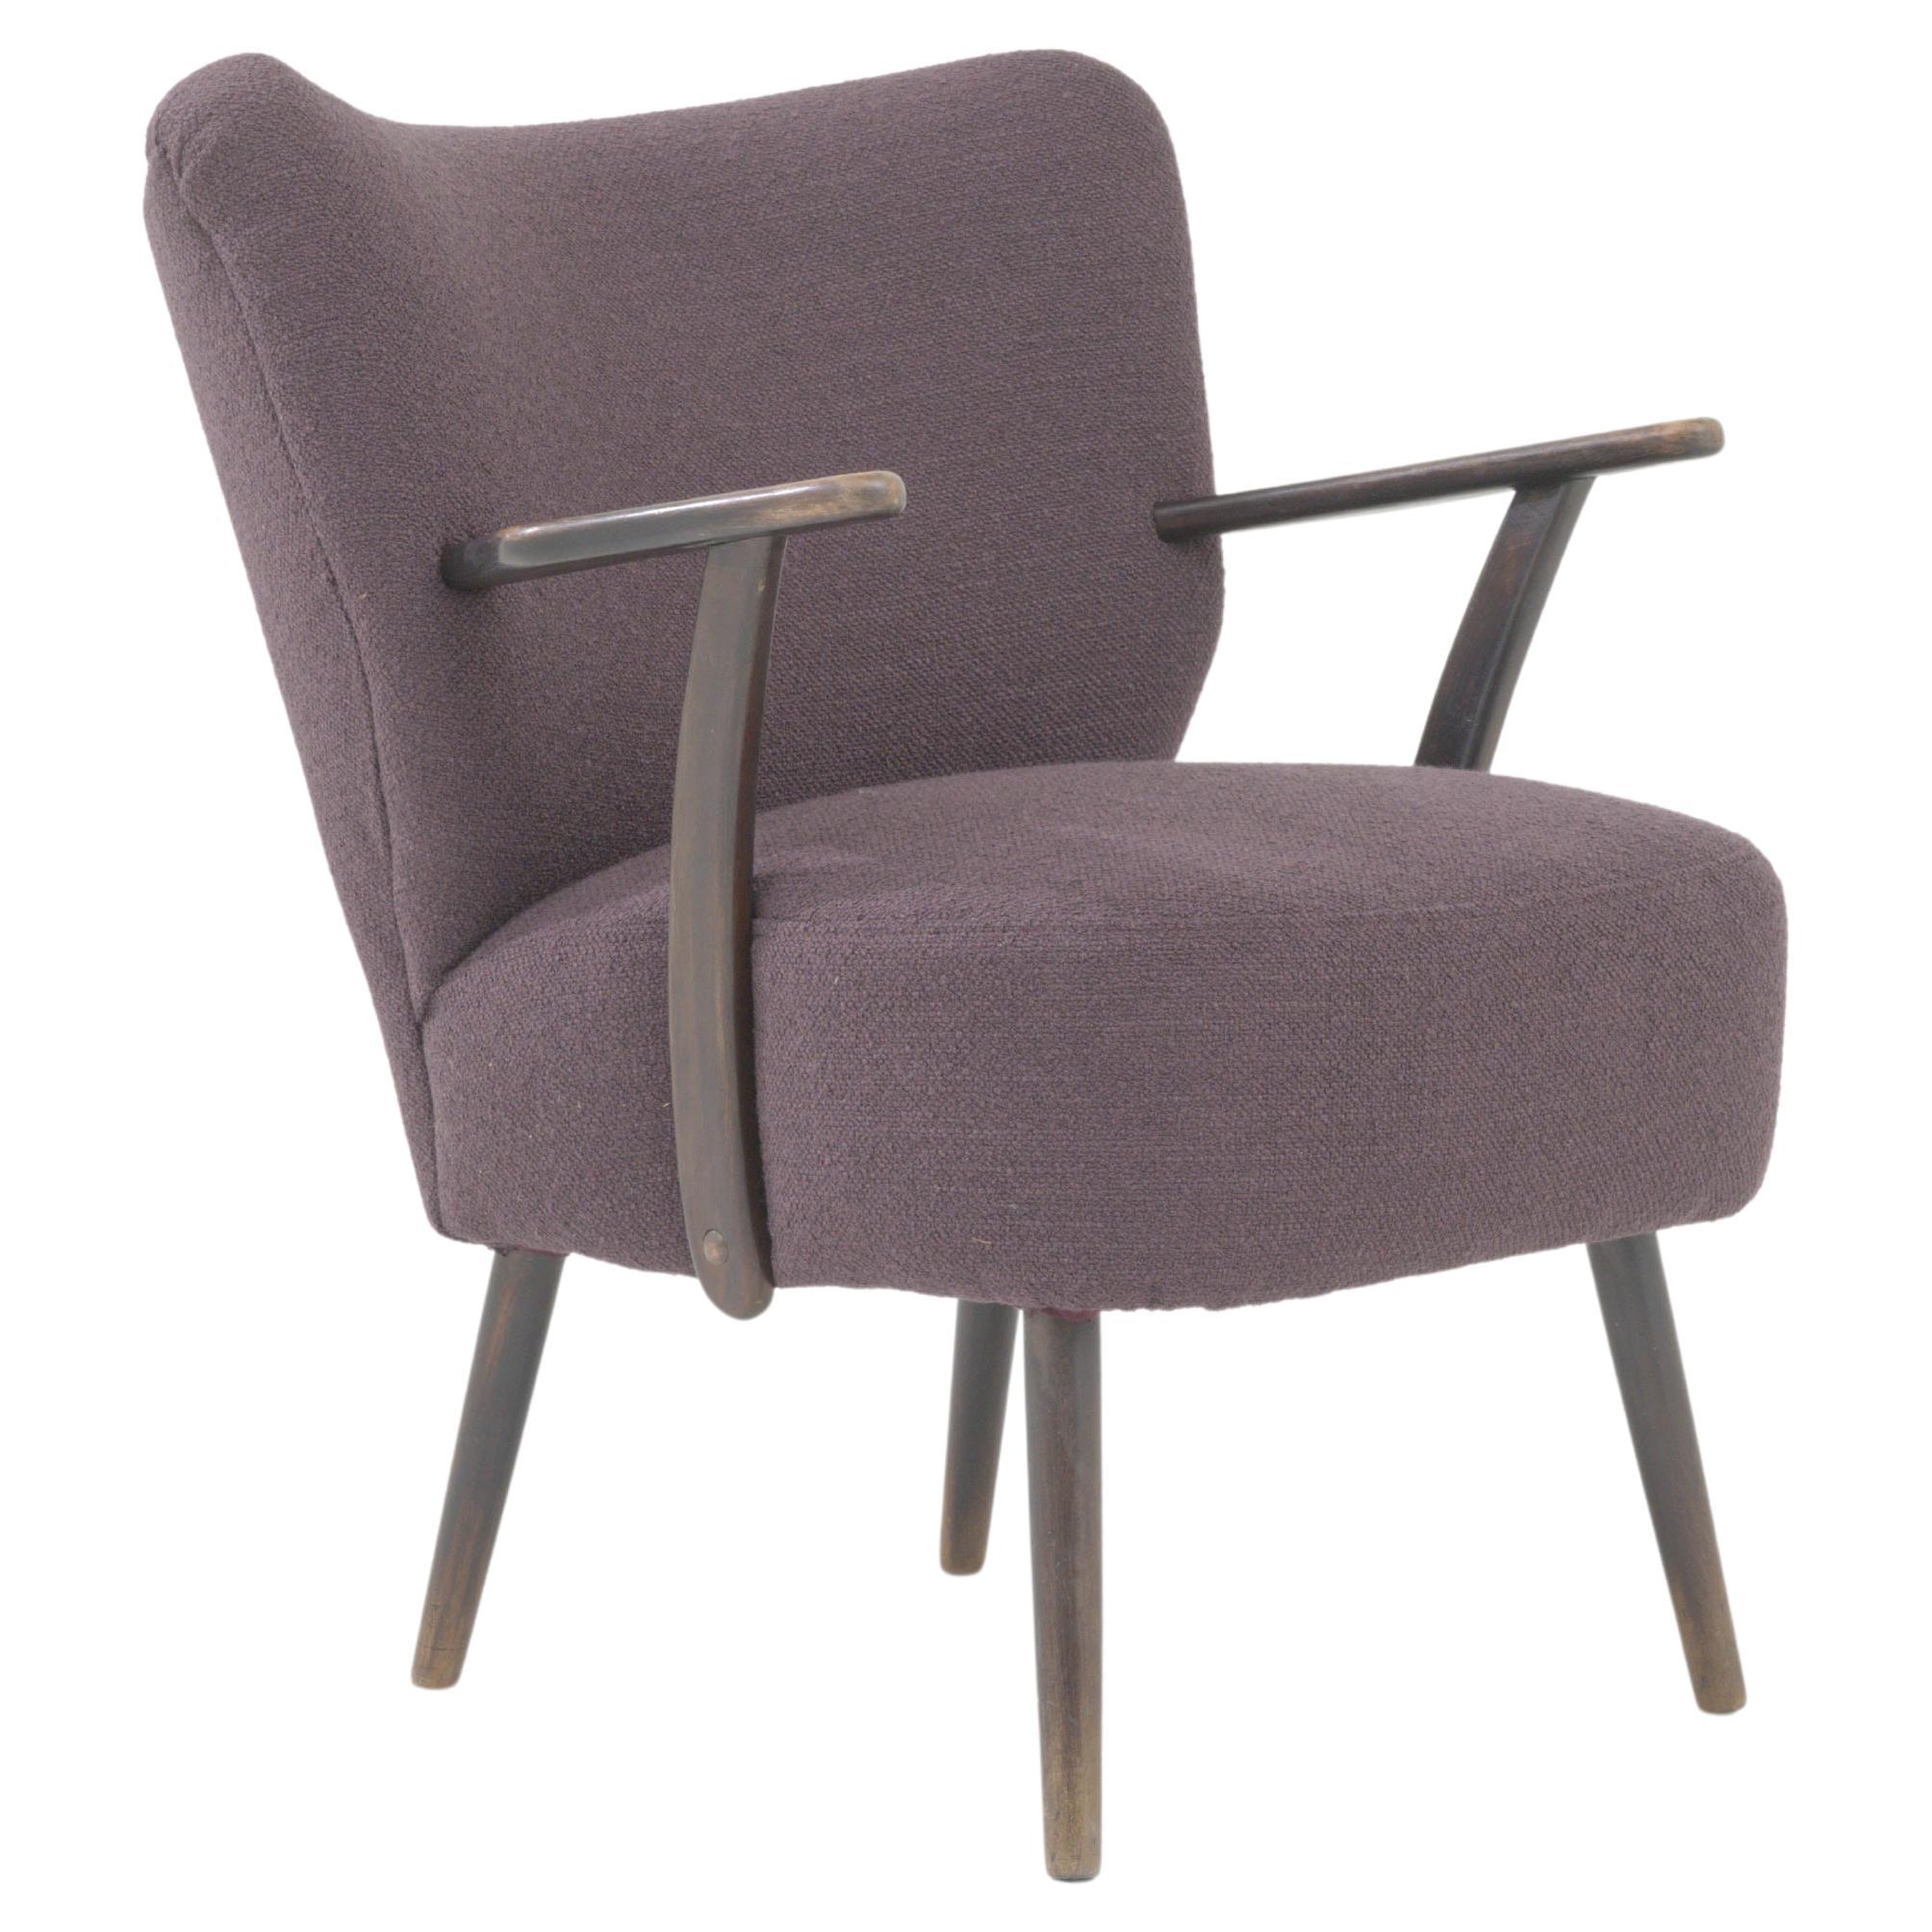 1960s Danish Upholstered Armchair